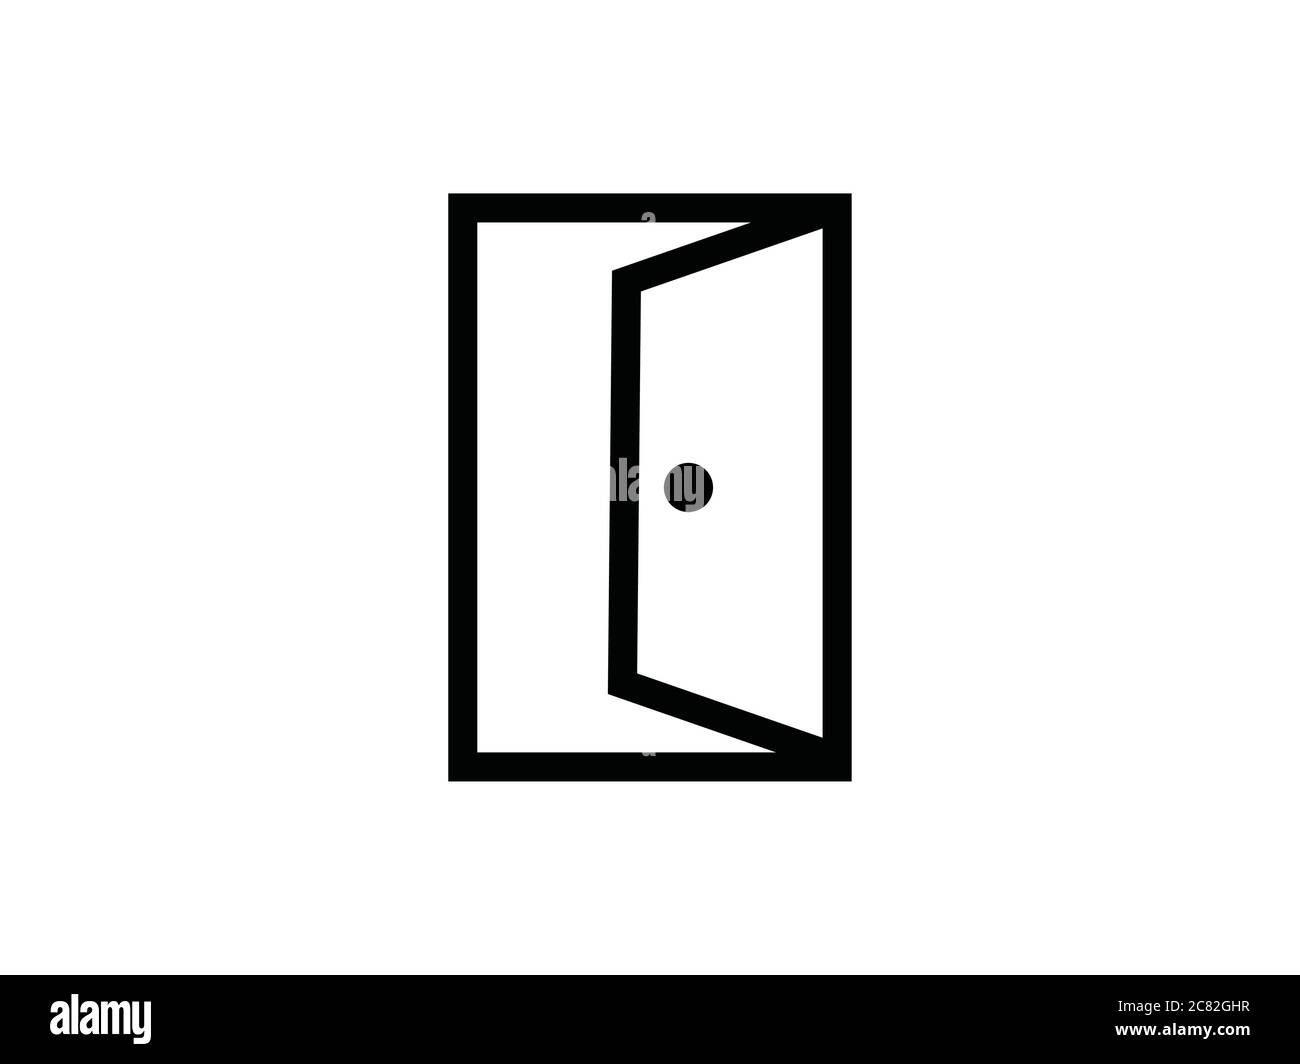 Door gate open symbol vector illustration Stock Vector